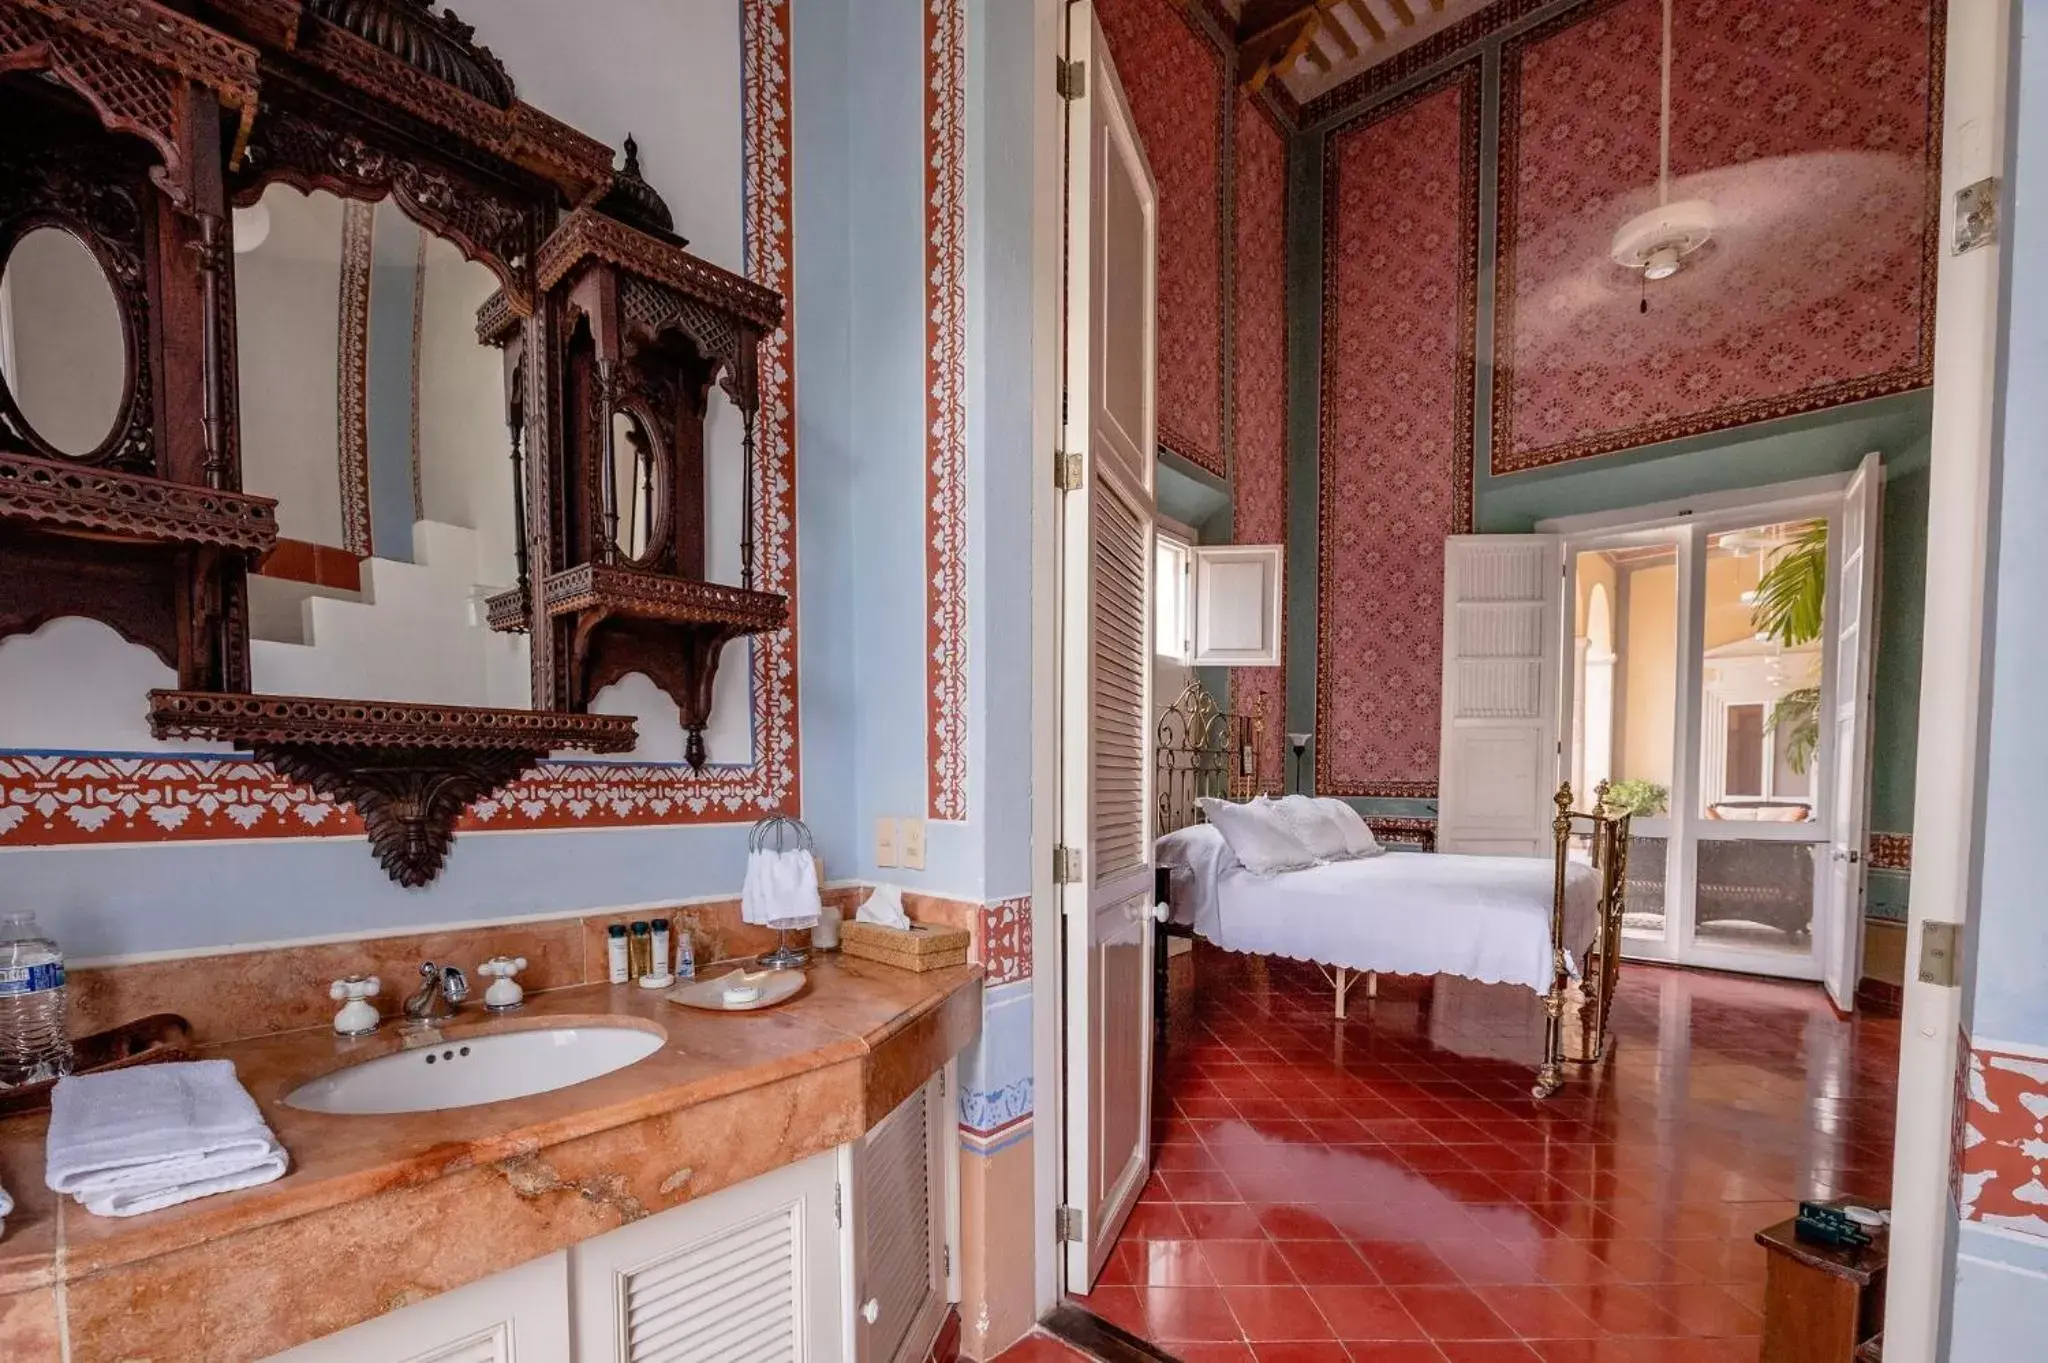 Photo of the whole room, Bathroom in HACIENDA SAN ANTONIO MILLET